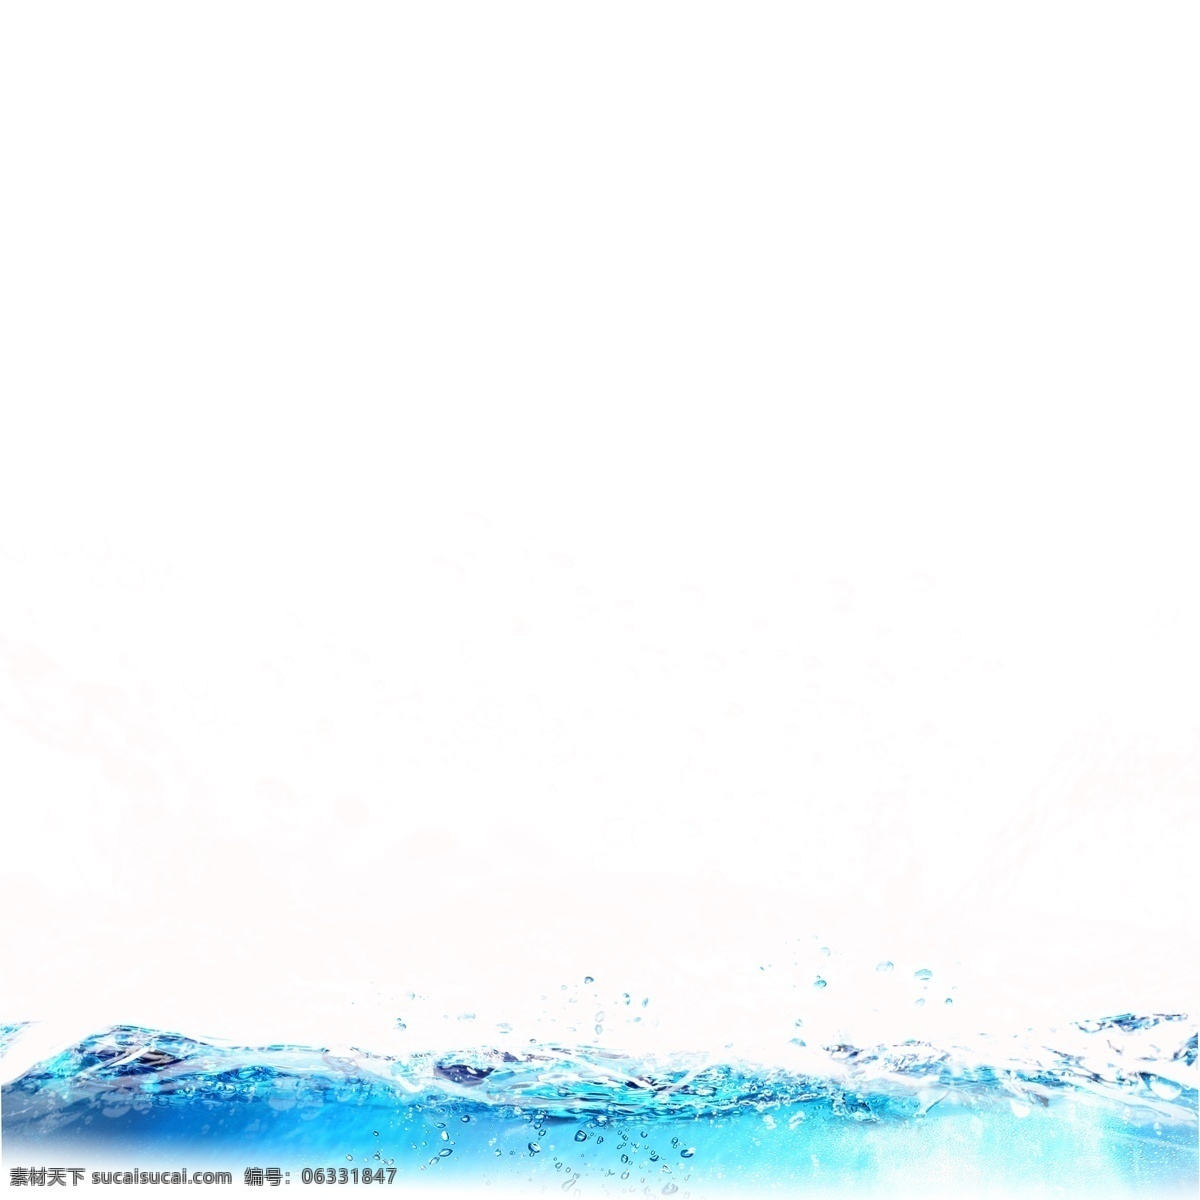 蓝色 水花 水滴 元素 水浪 水流 白色 喷溅 动感 水珠 蓝色水花 晶莹